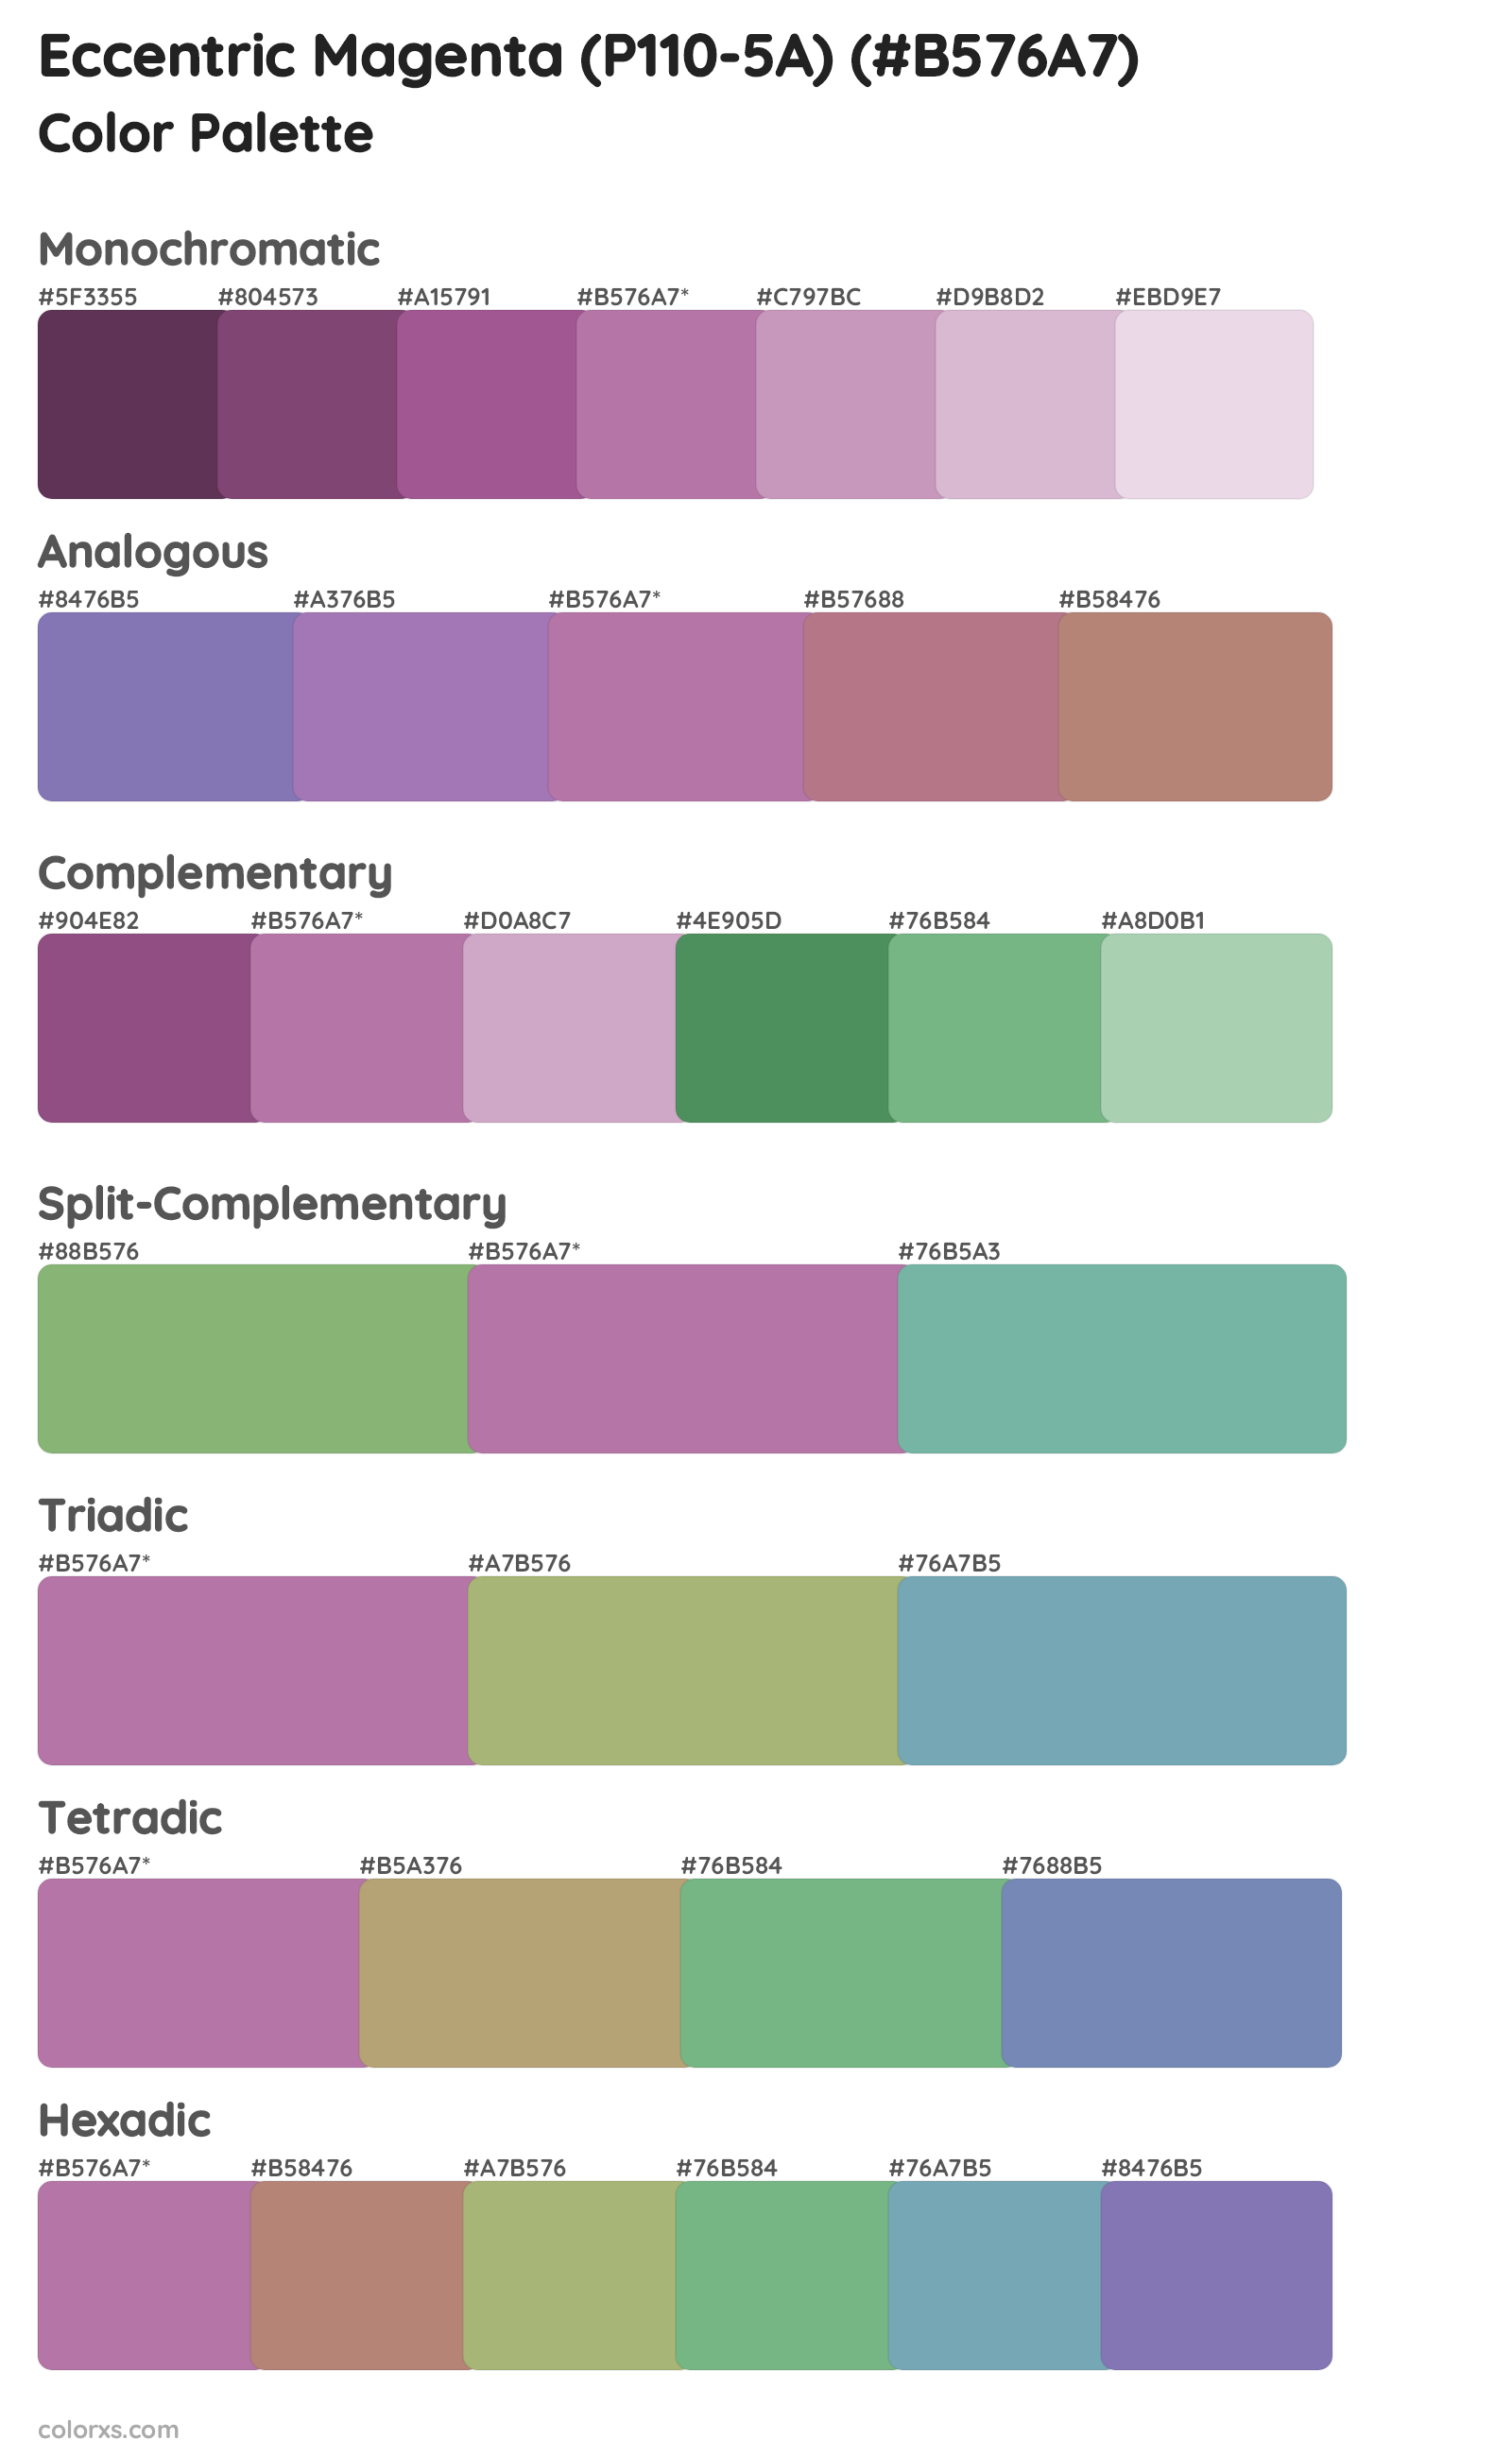 Eccentric Magenta (P110-5A) Color Scheme Palettes